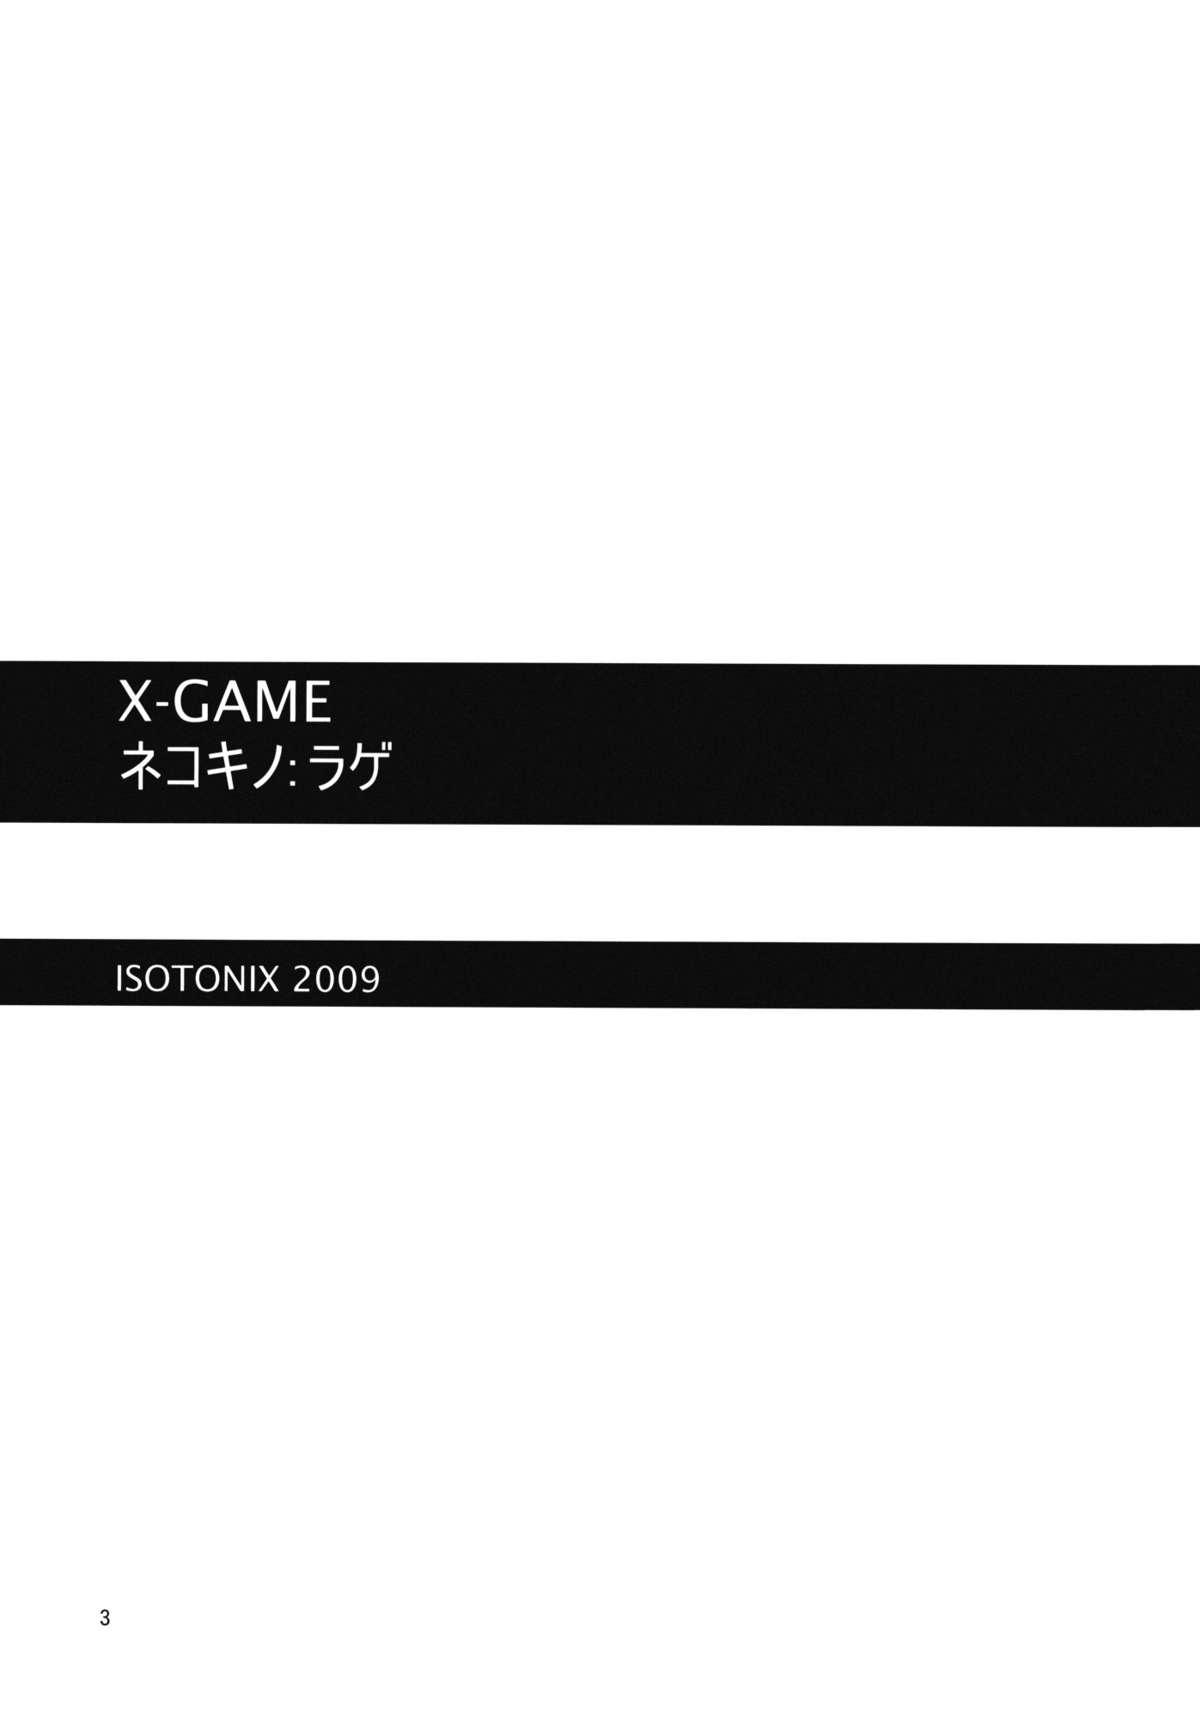 X-GAME Nekokino：Rage 1